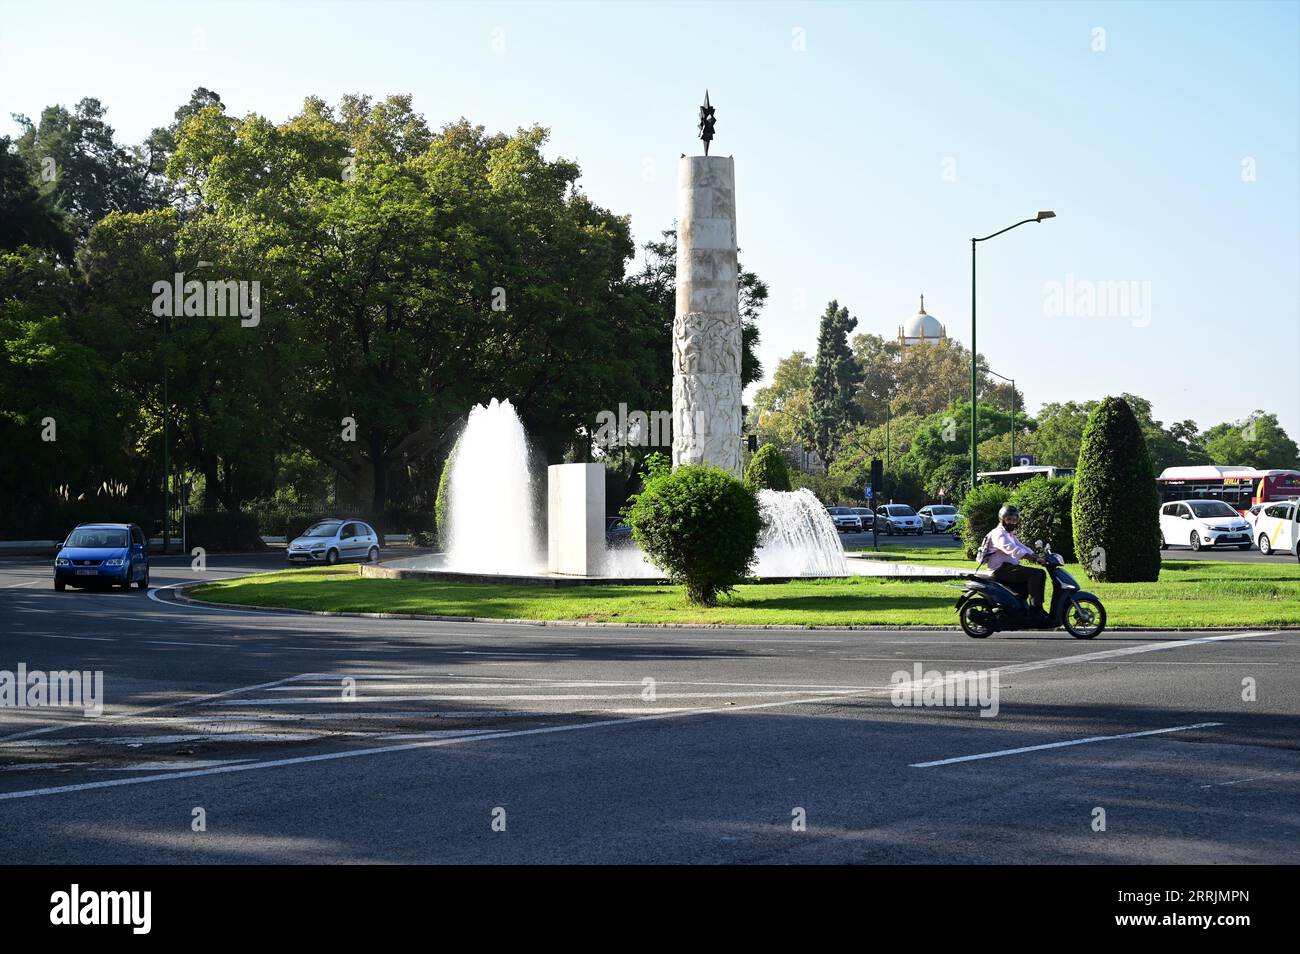 Monumento a la fuente de agua de Juan Sebastián Elcano y estatua. Foto de stock